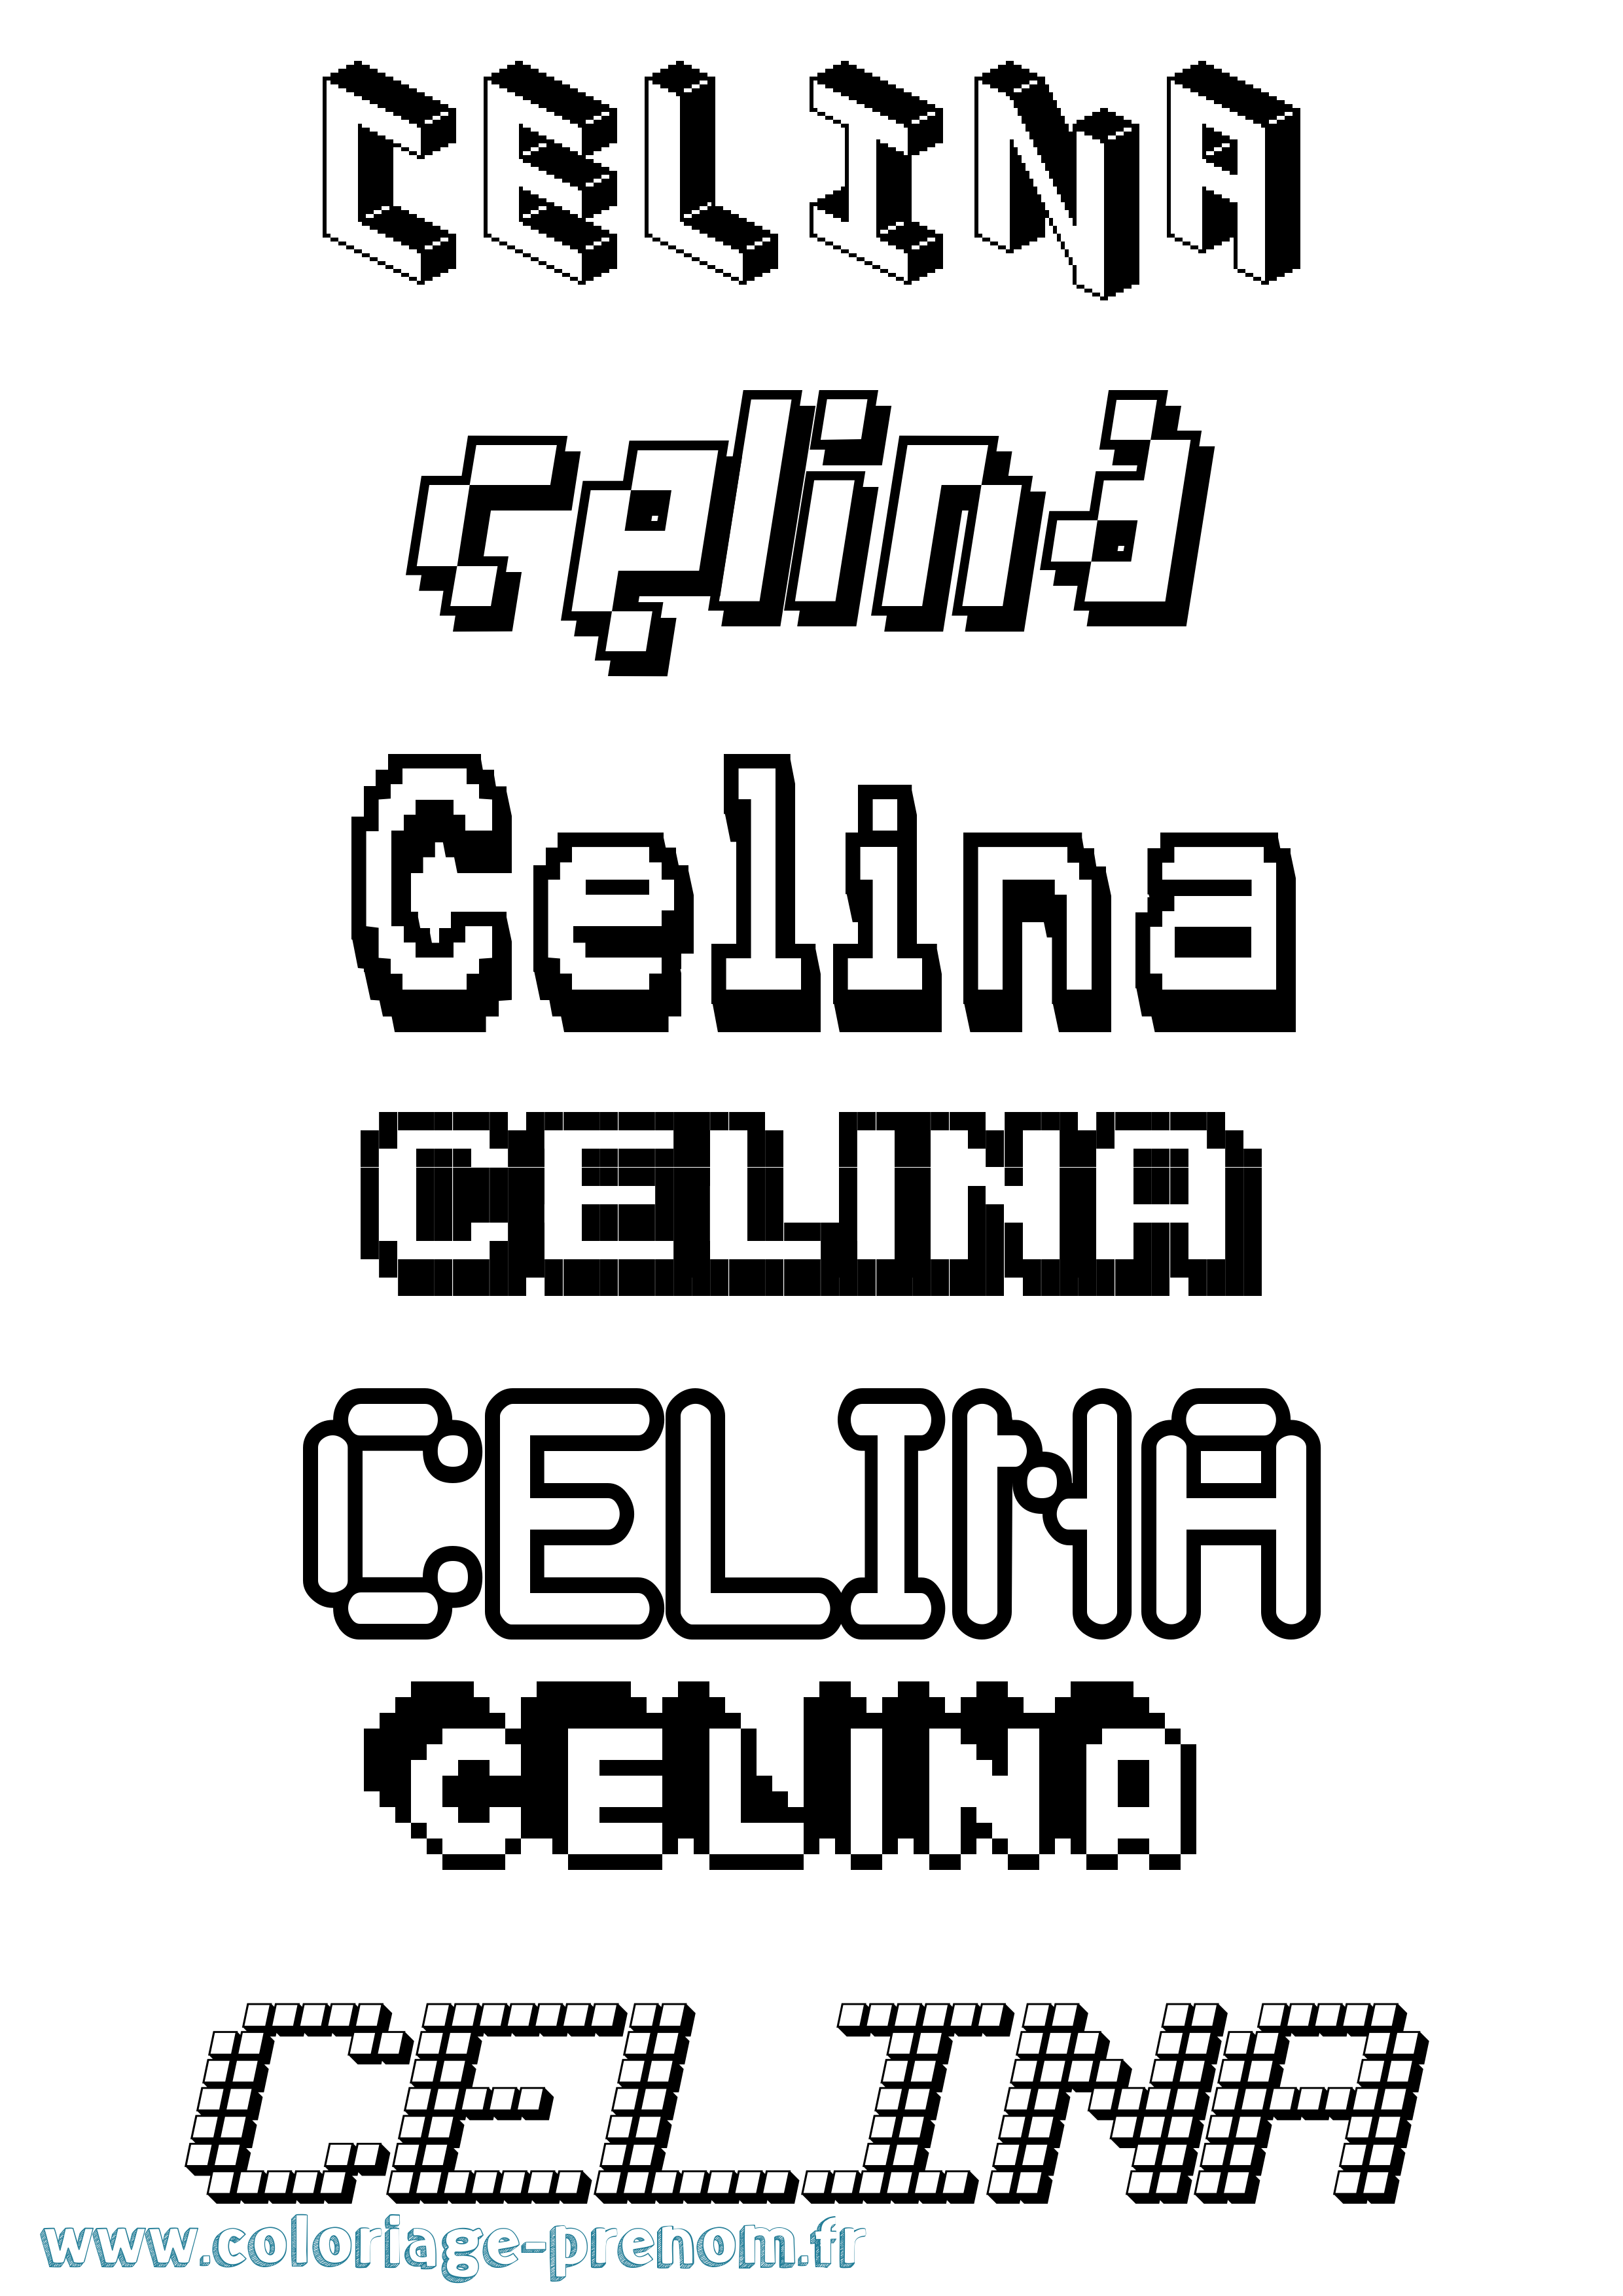 Coloriage prénom Celina